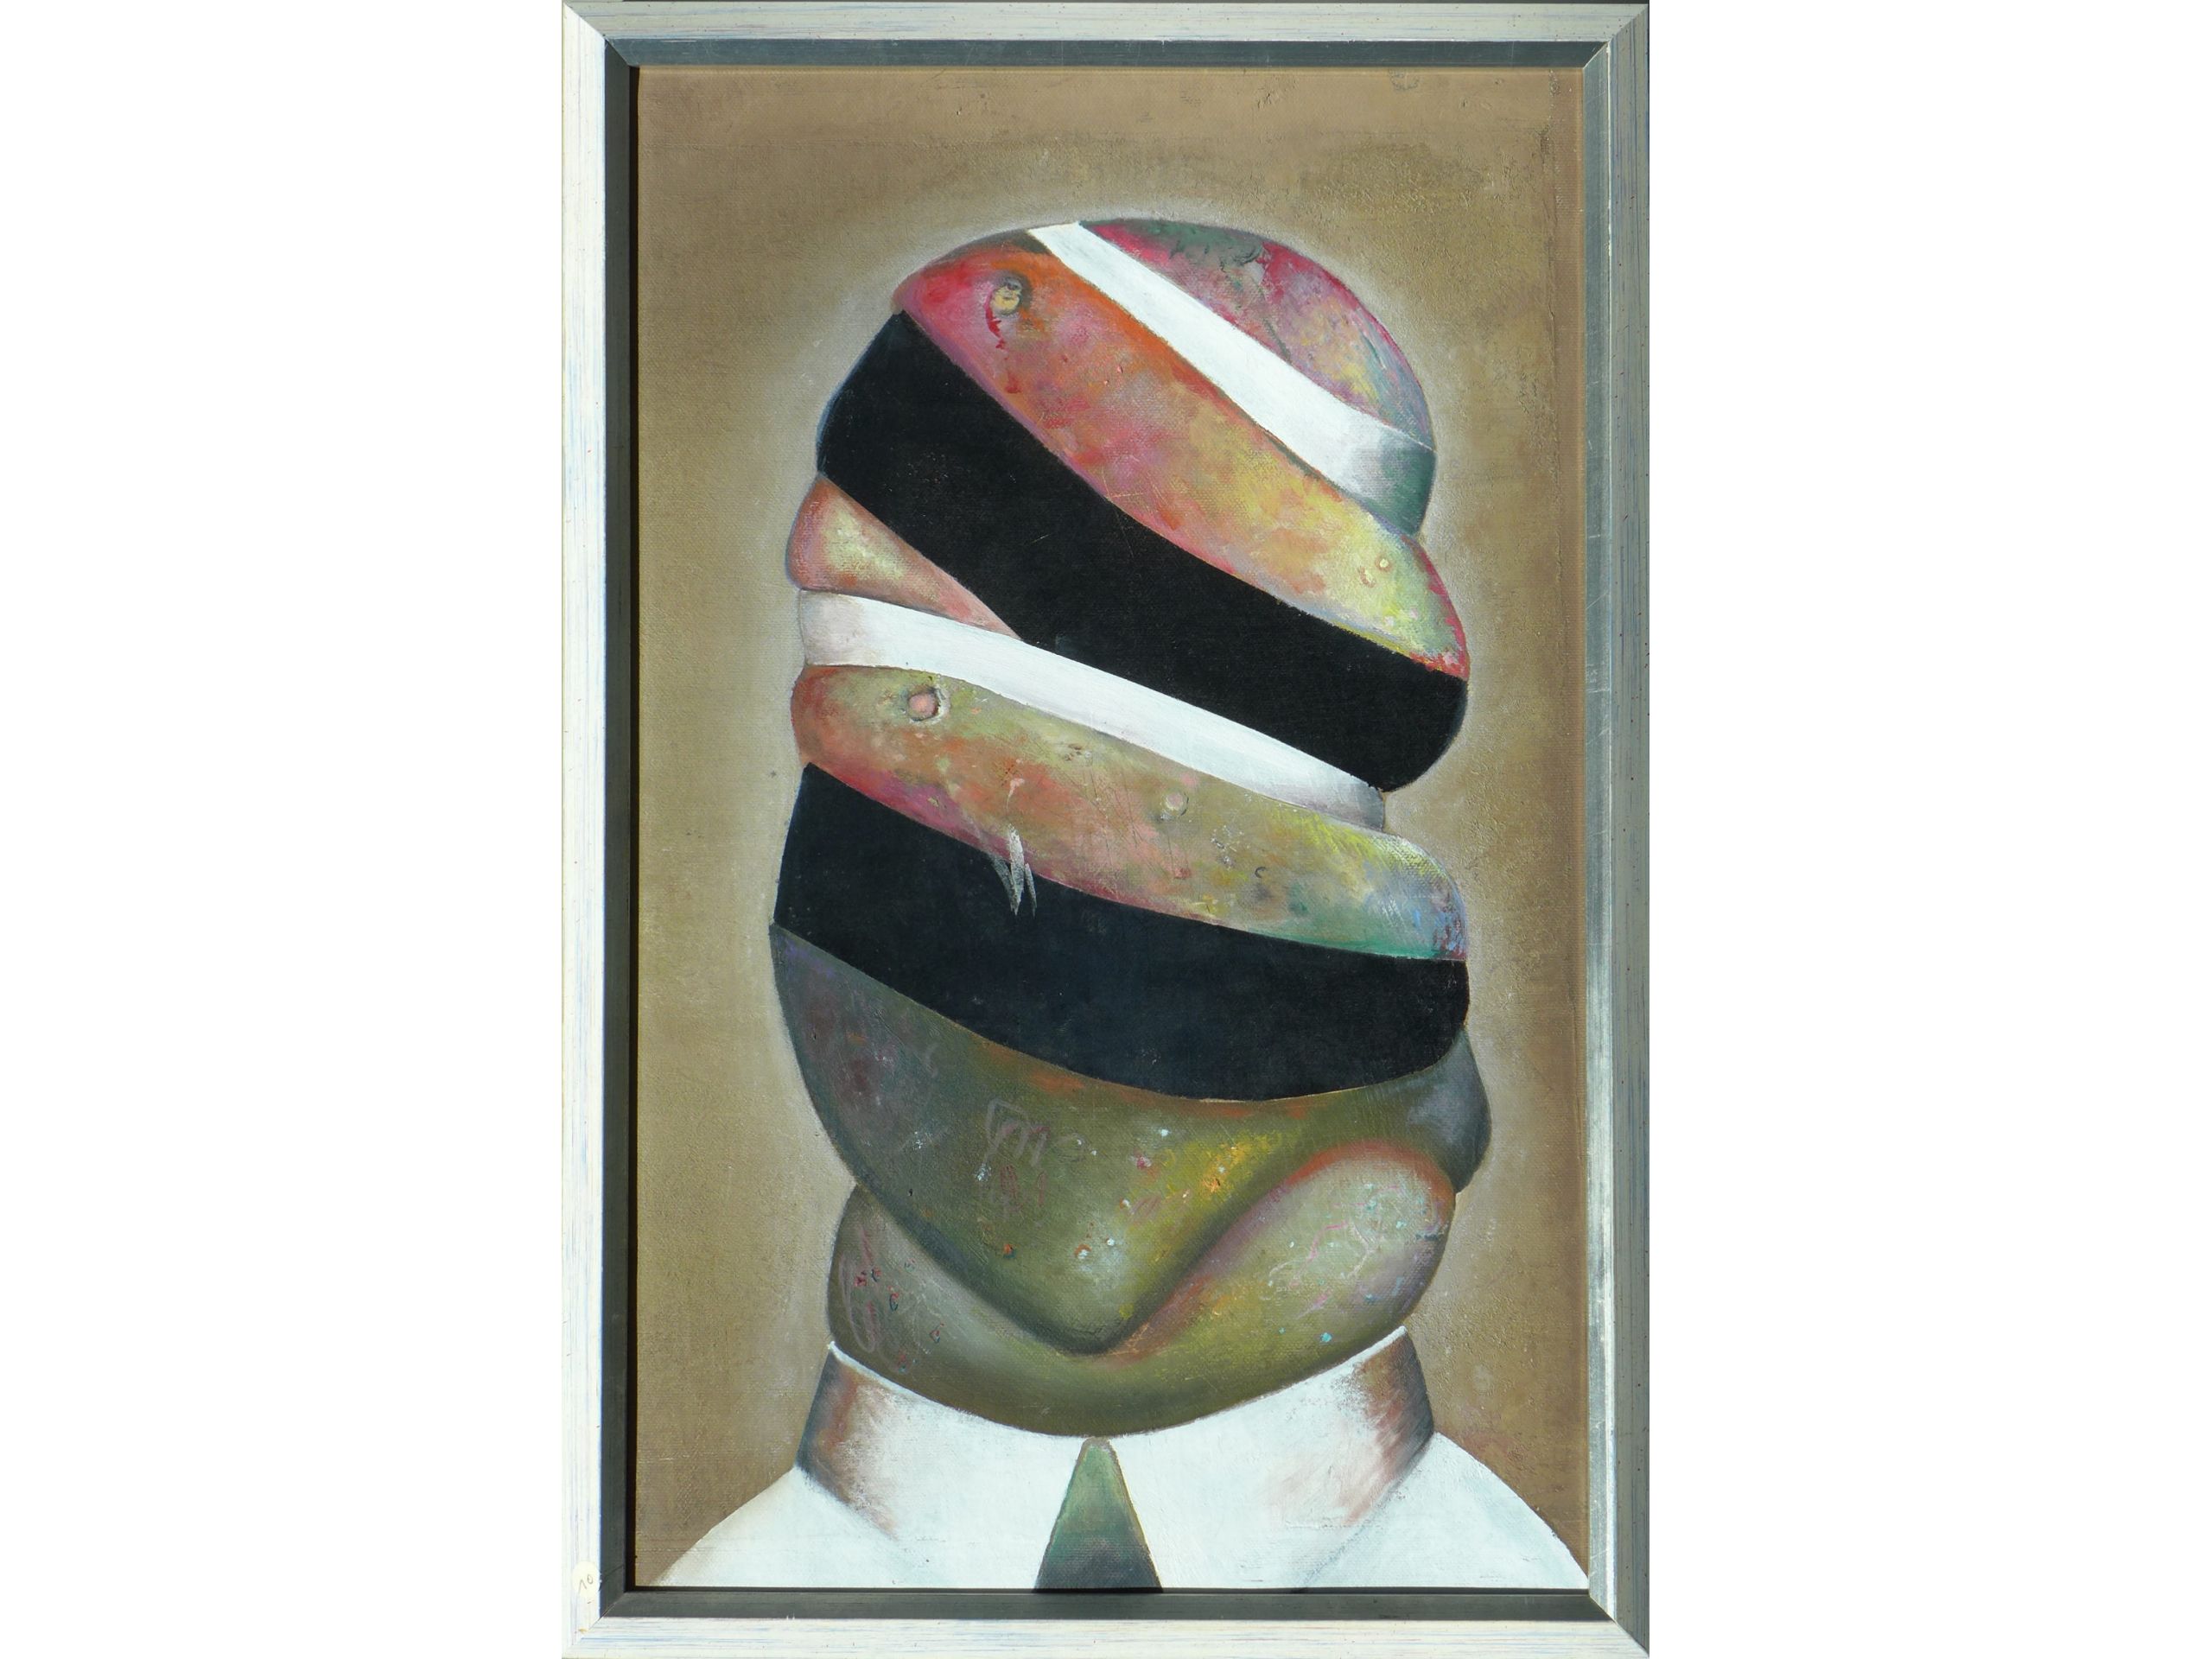 Jürgen Möbius, 'Infizierter Kopf', 1987, Öl auf Leinwand, 50 x 32 cm, 220 €